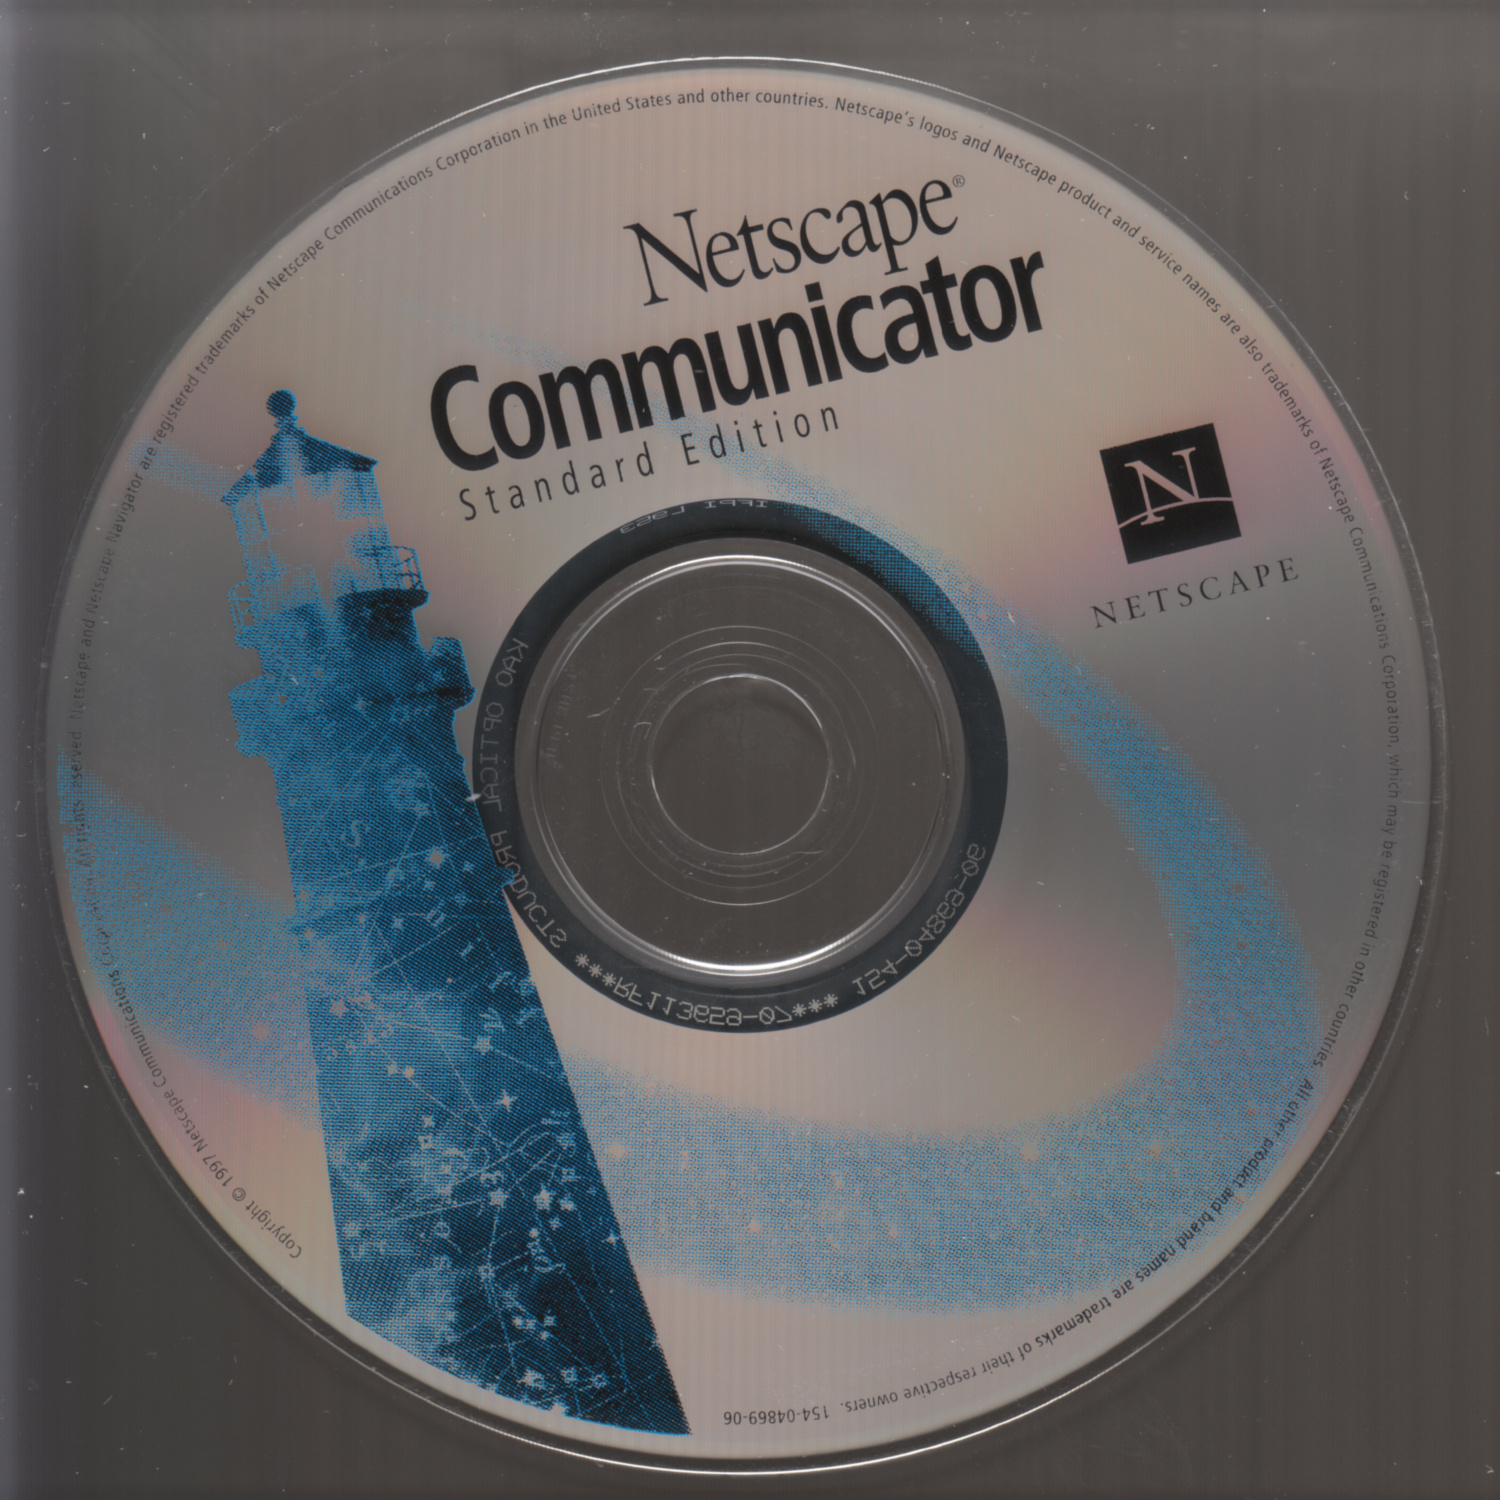 Photo of Netscape Communicator Standard Edition CD-ROM